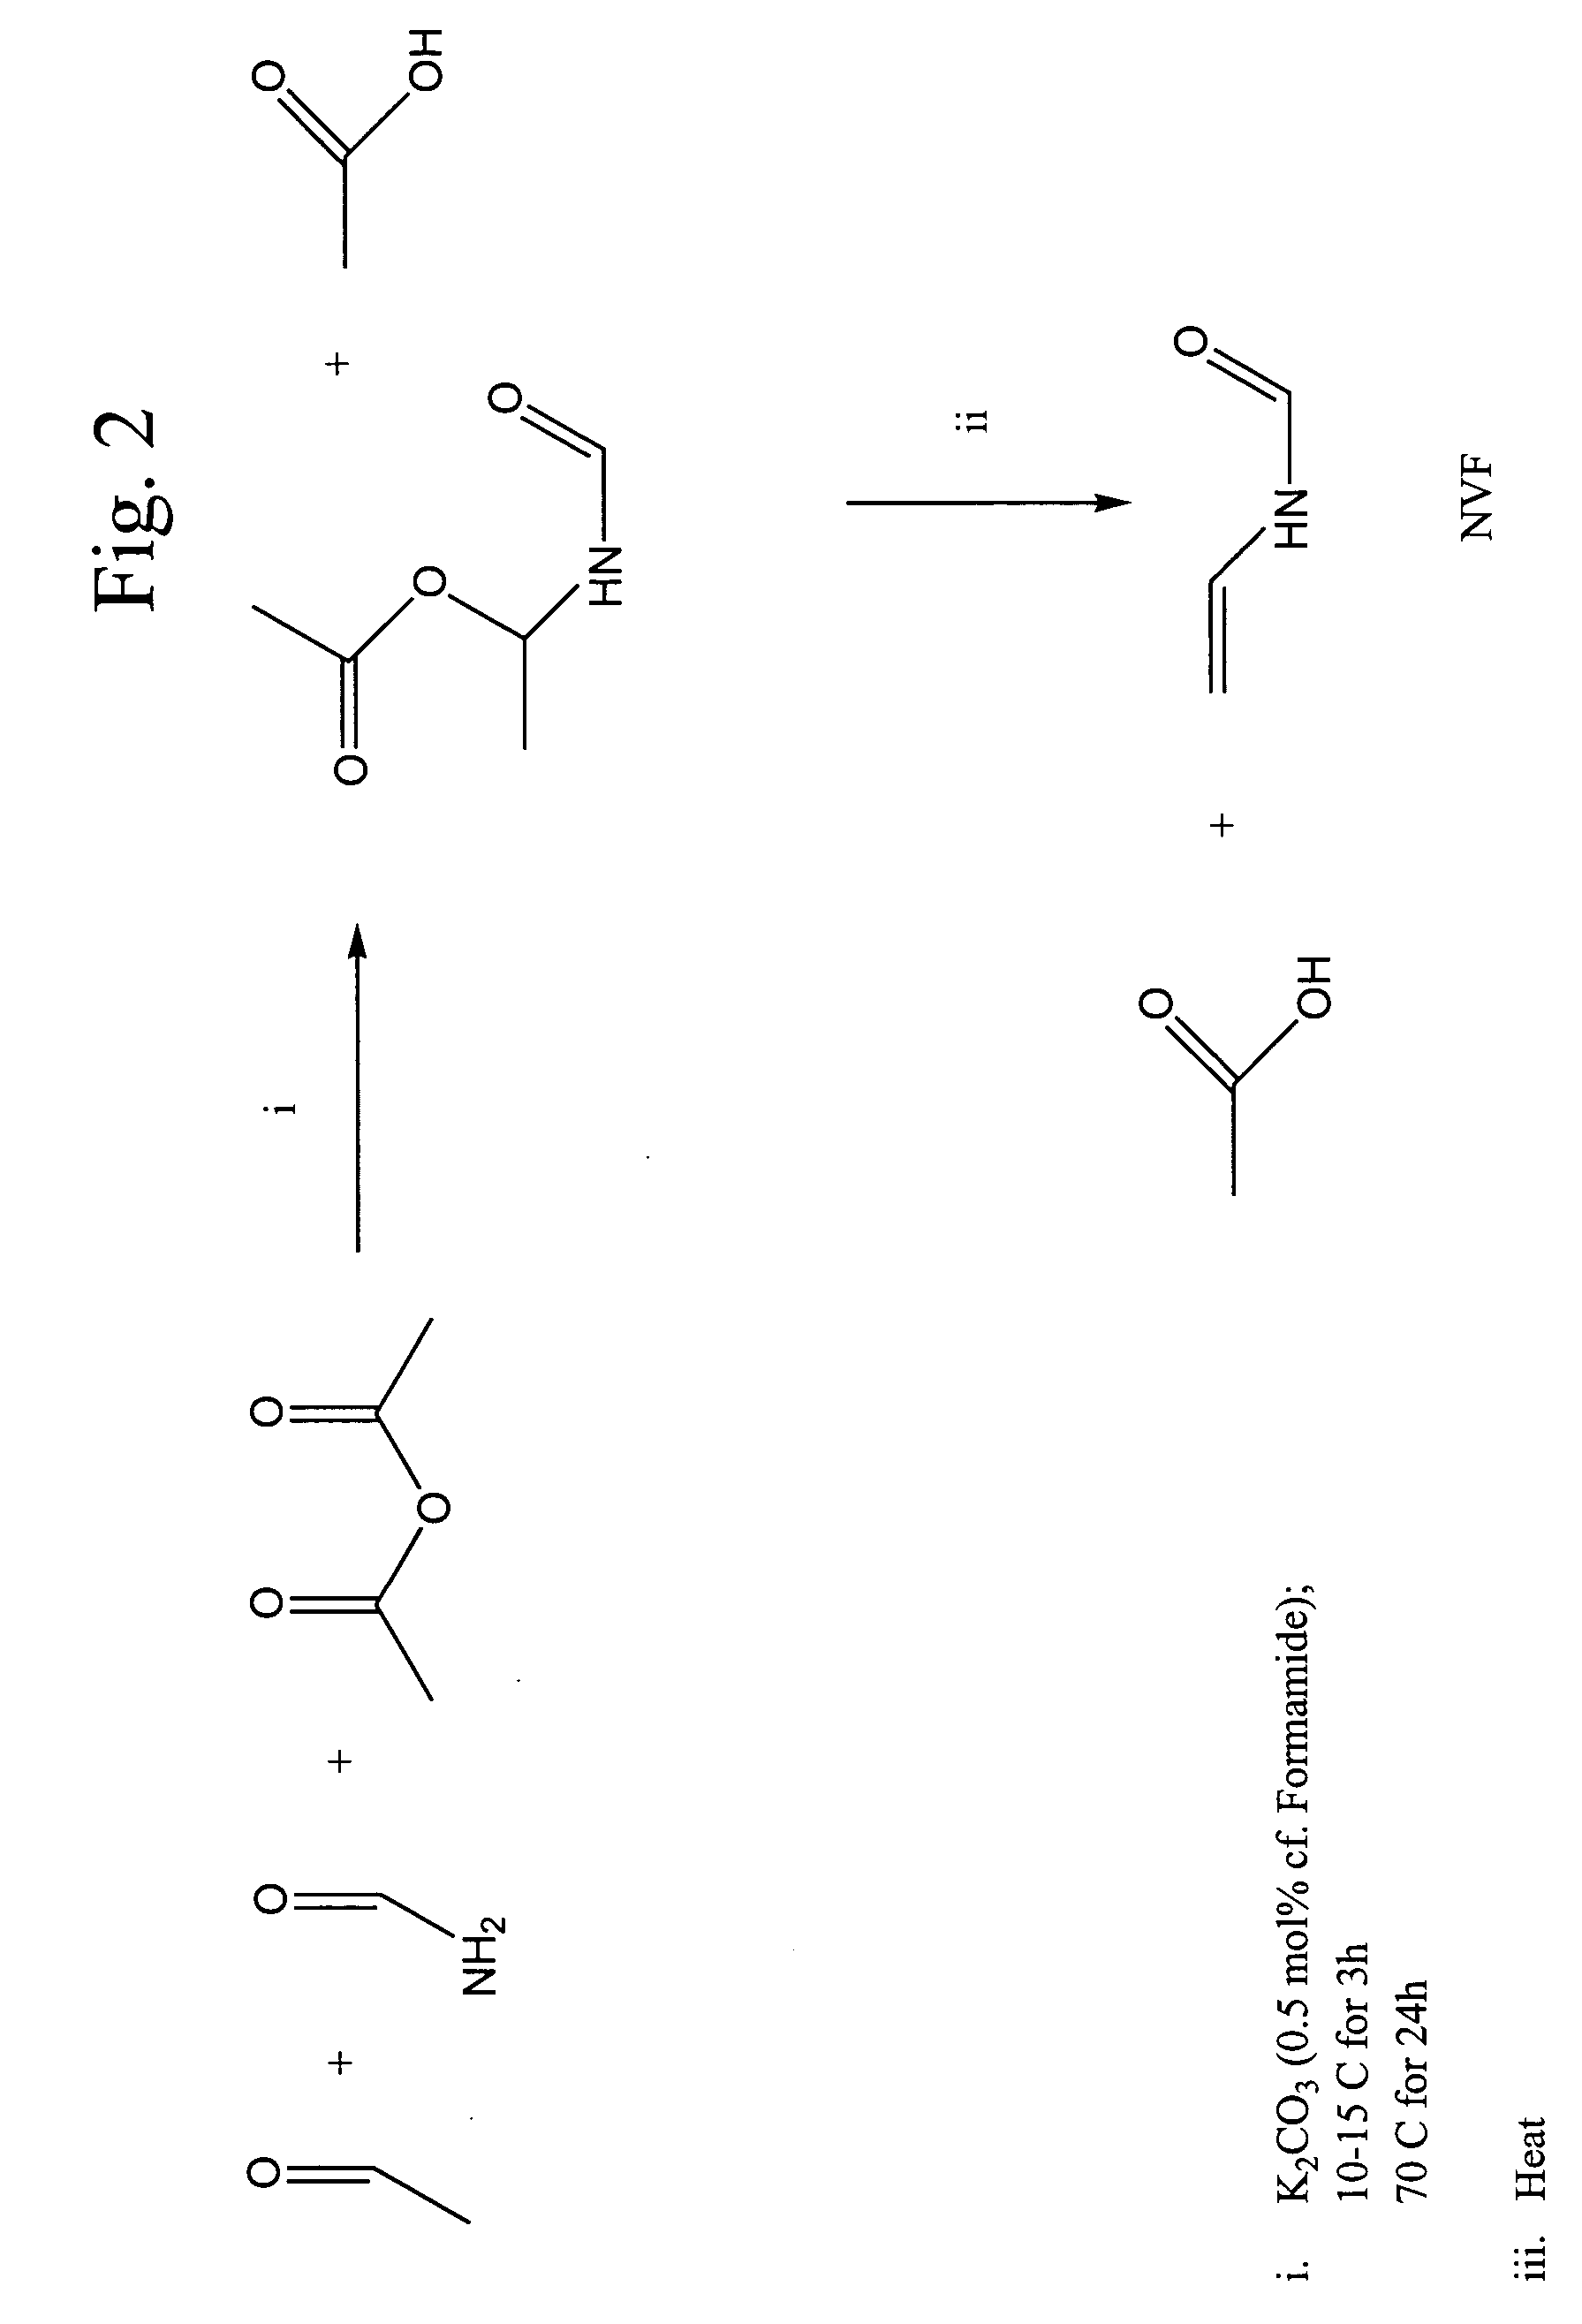 Synthesis of N-vinyl formamide